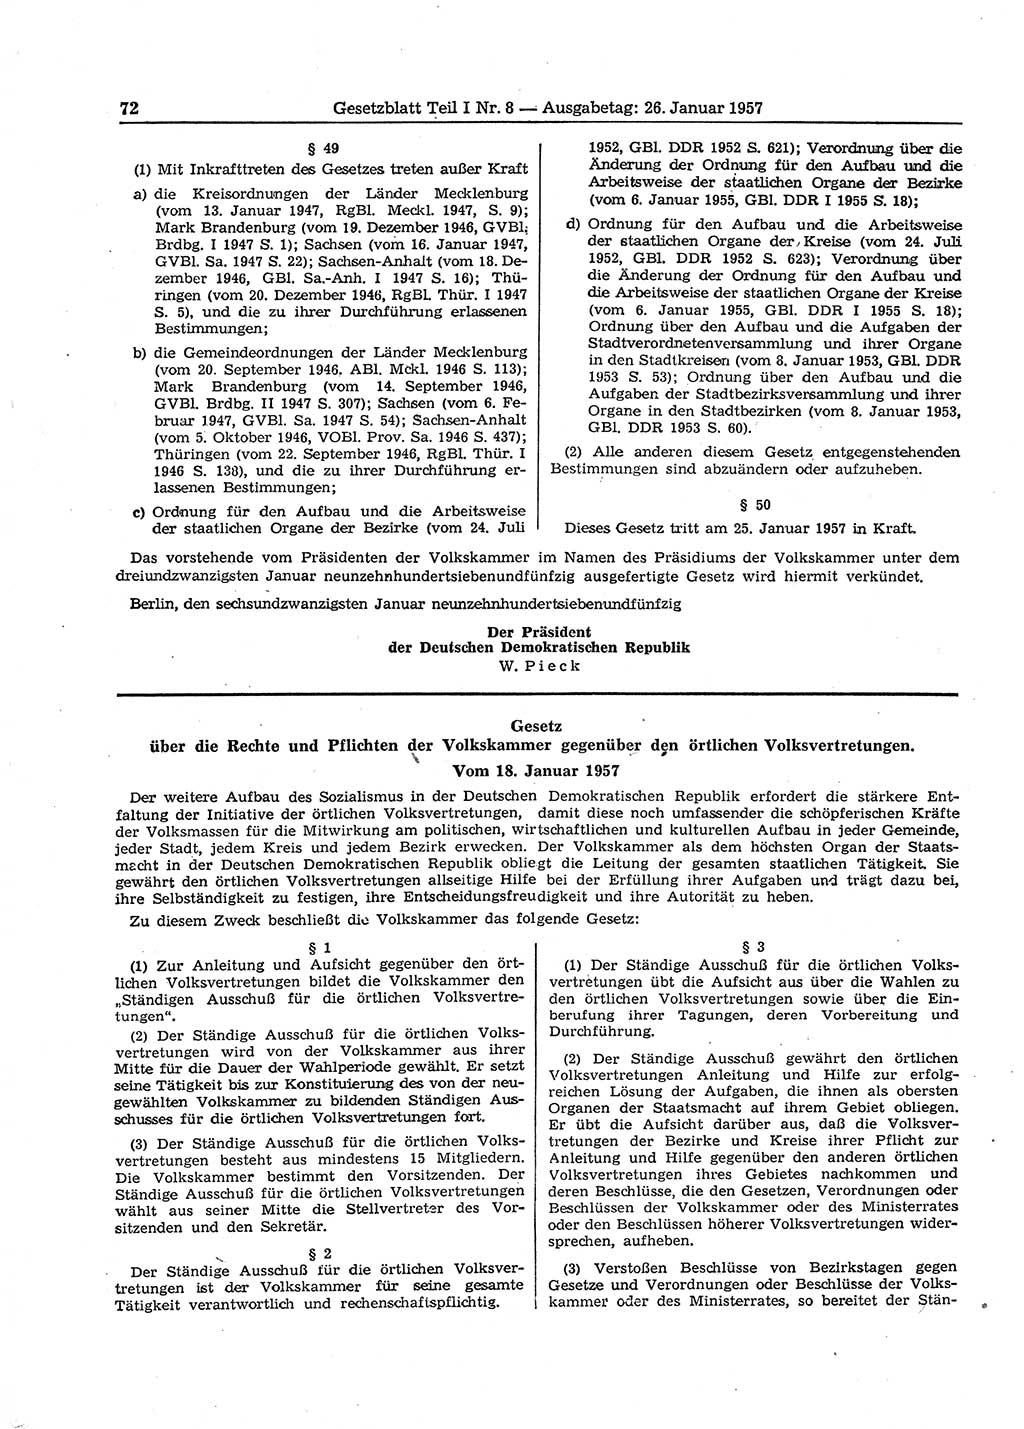 Gesetzblatt (GBl.) der Deutschen Demokratischen Republik (DDR) Teil Ⅰ 1957, Seite 72 (GBl. DDR Ⅰ 1957, S. 72)